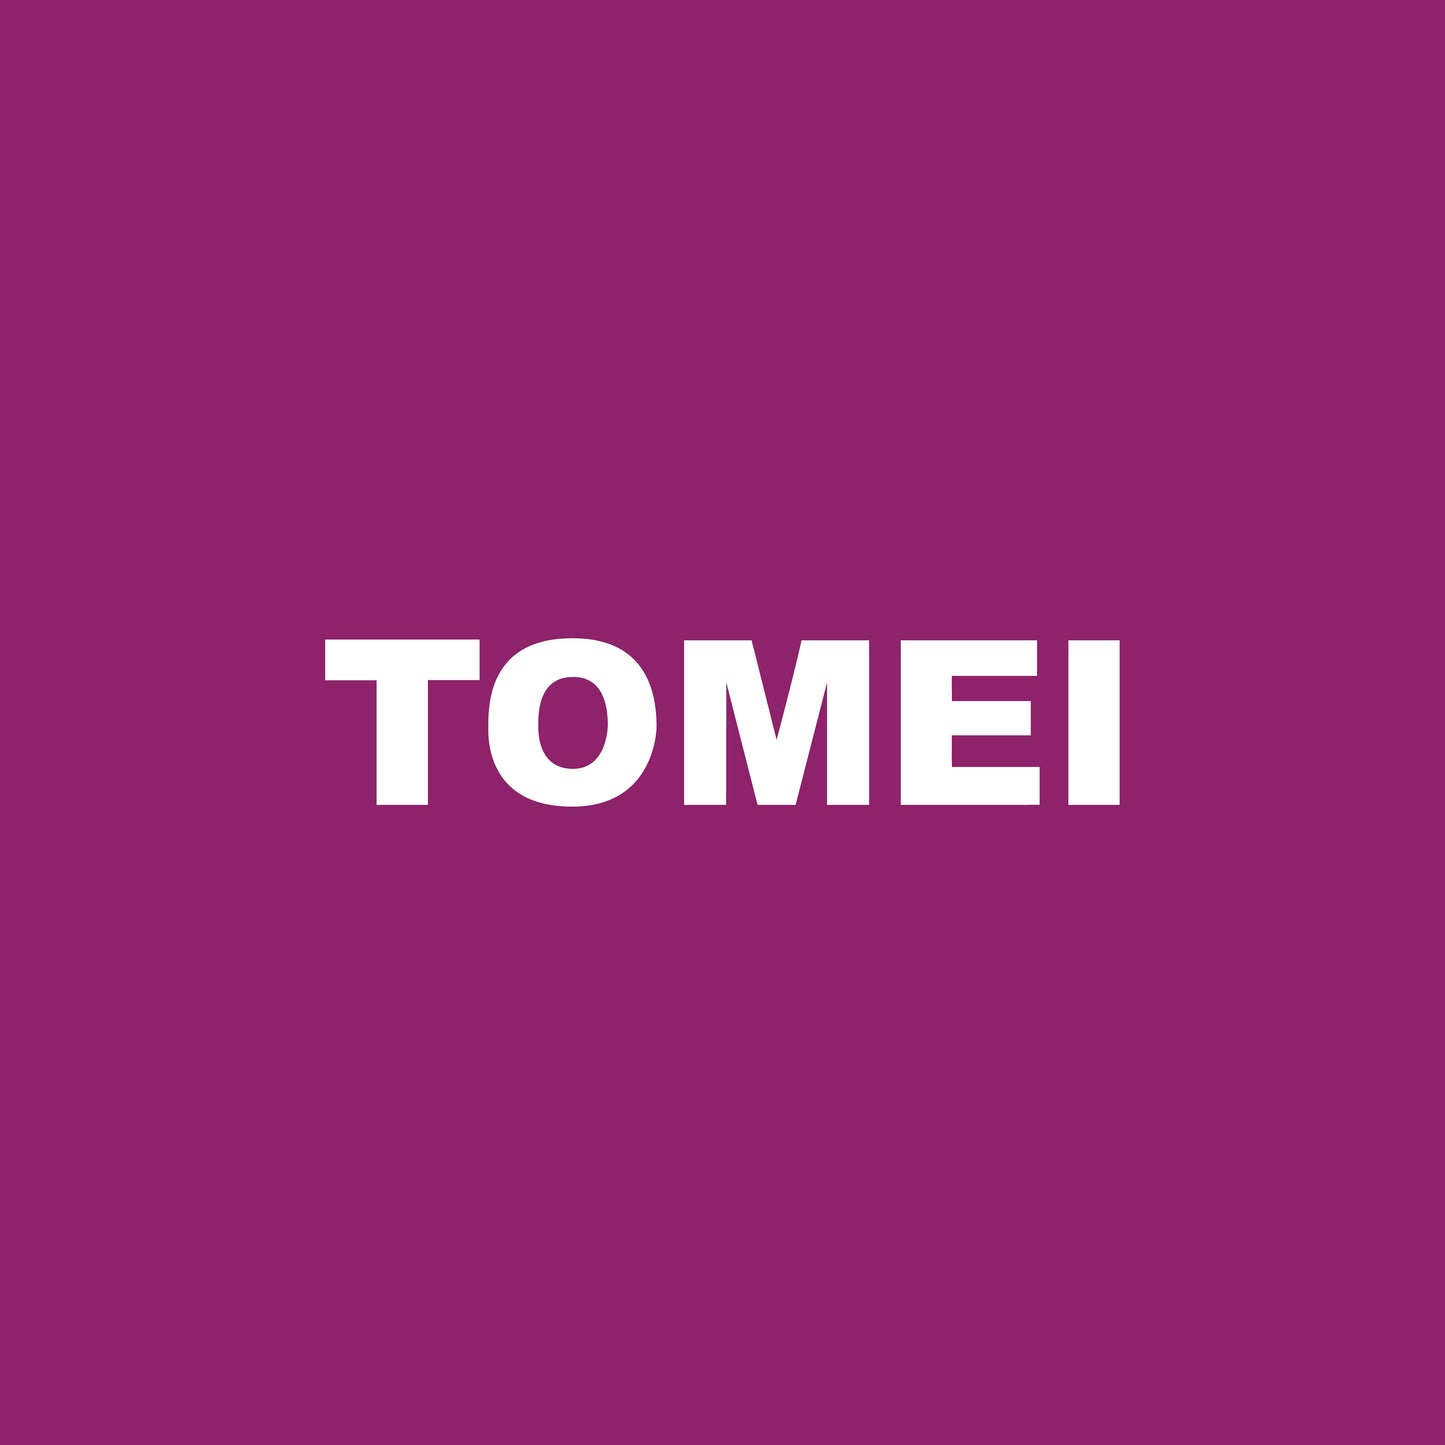 TOMEI Diamond Pendant Set, White+Rose Gold 585